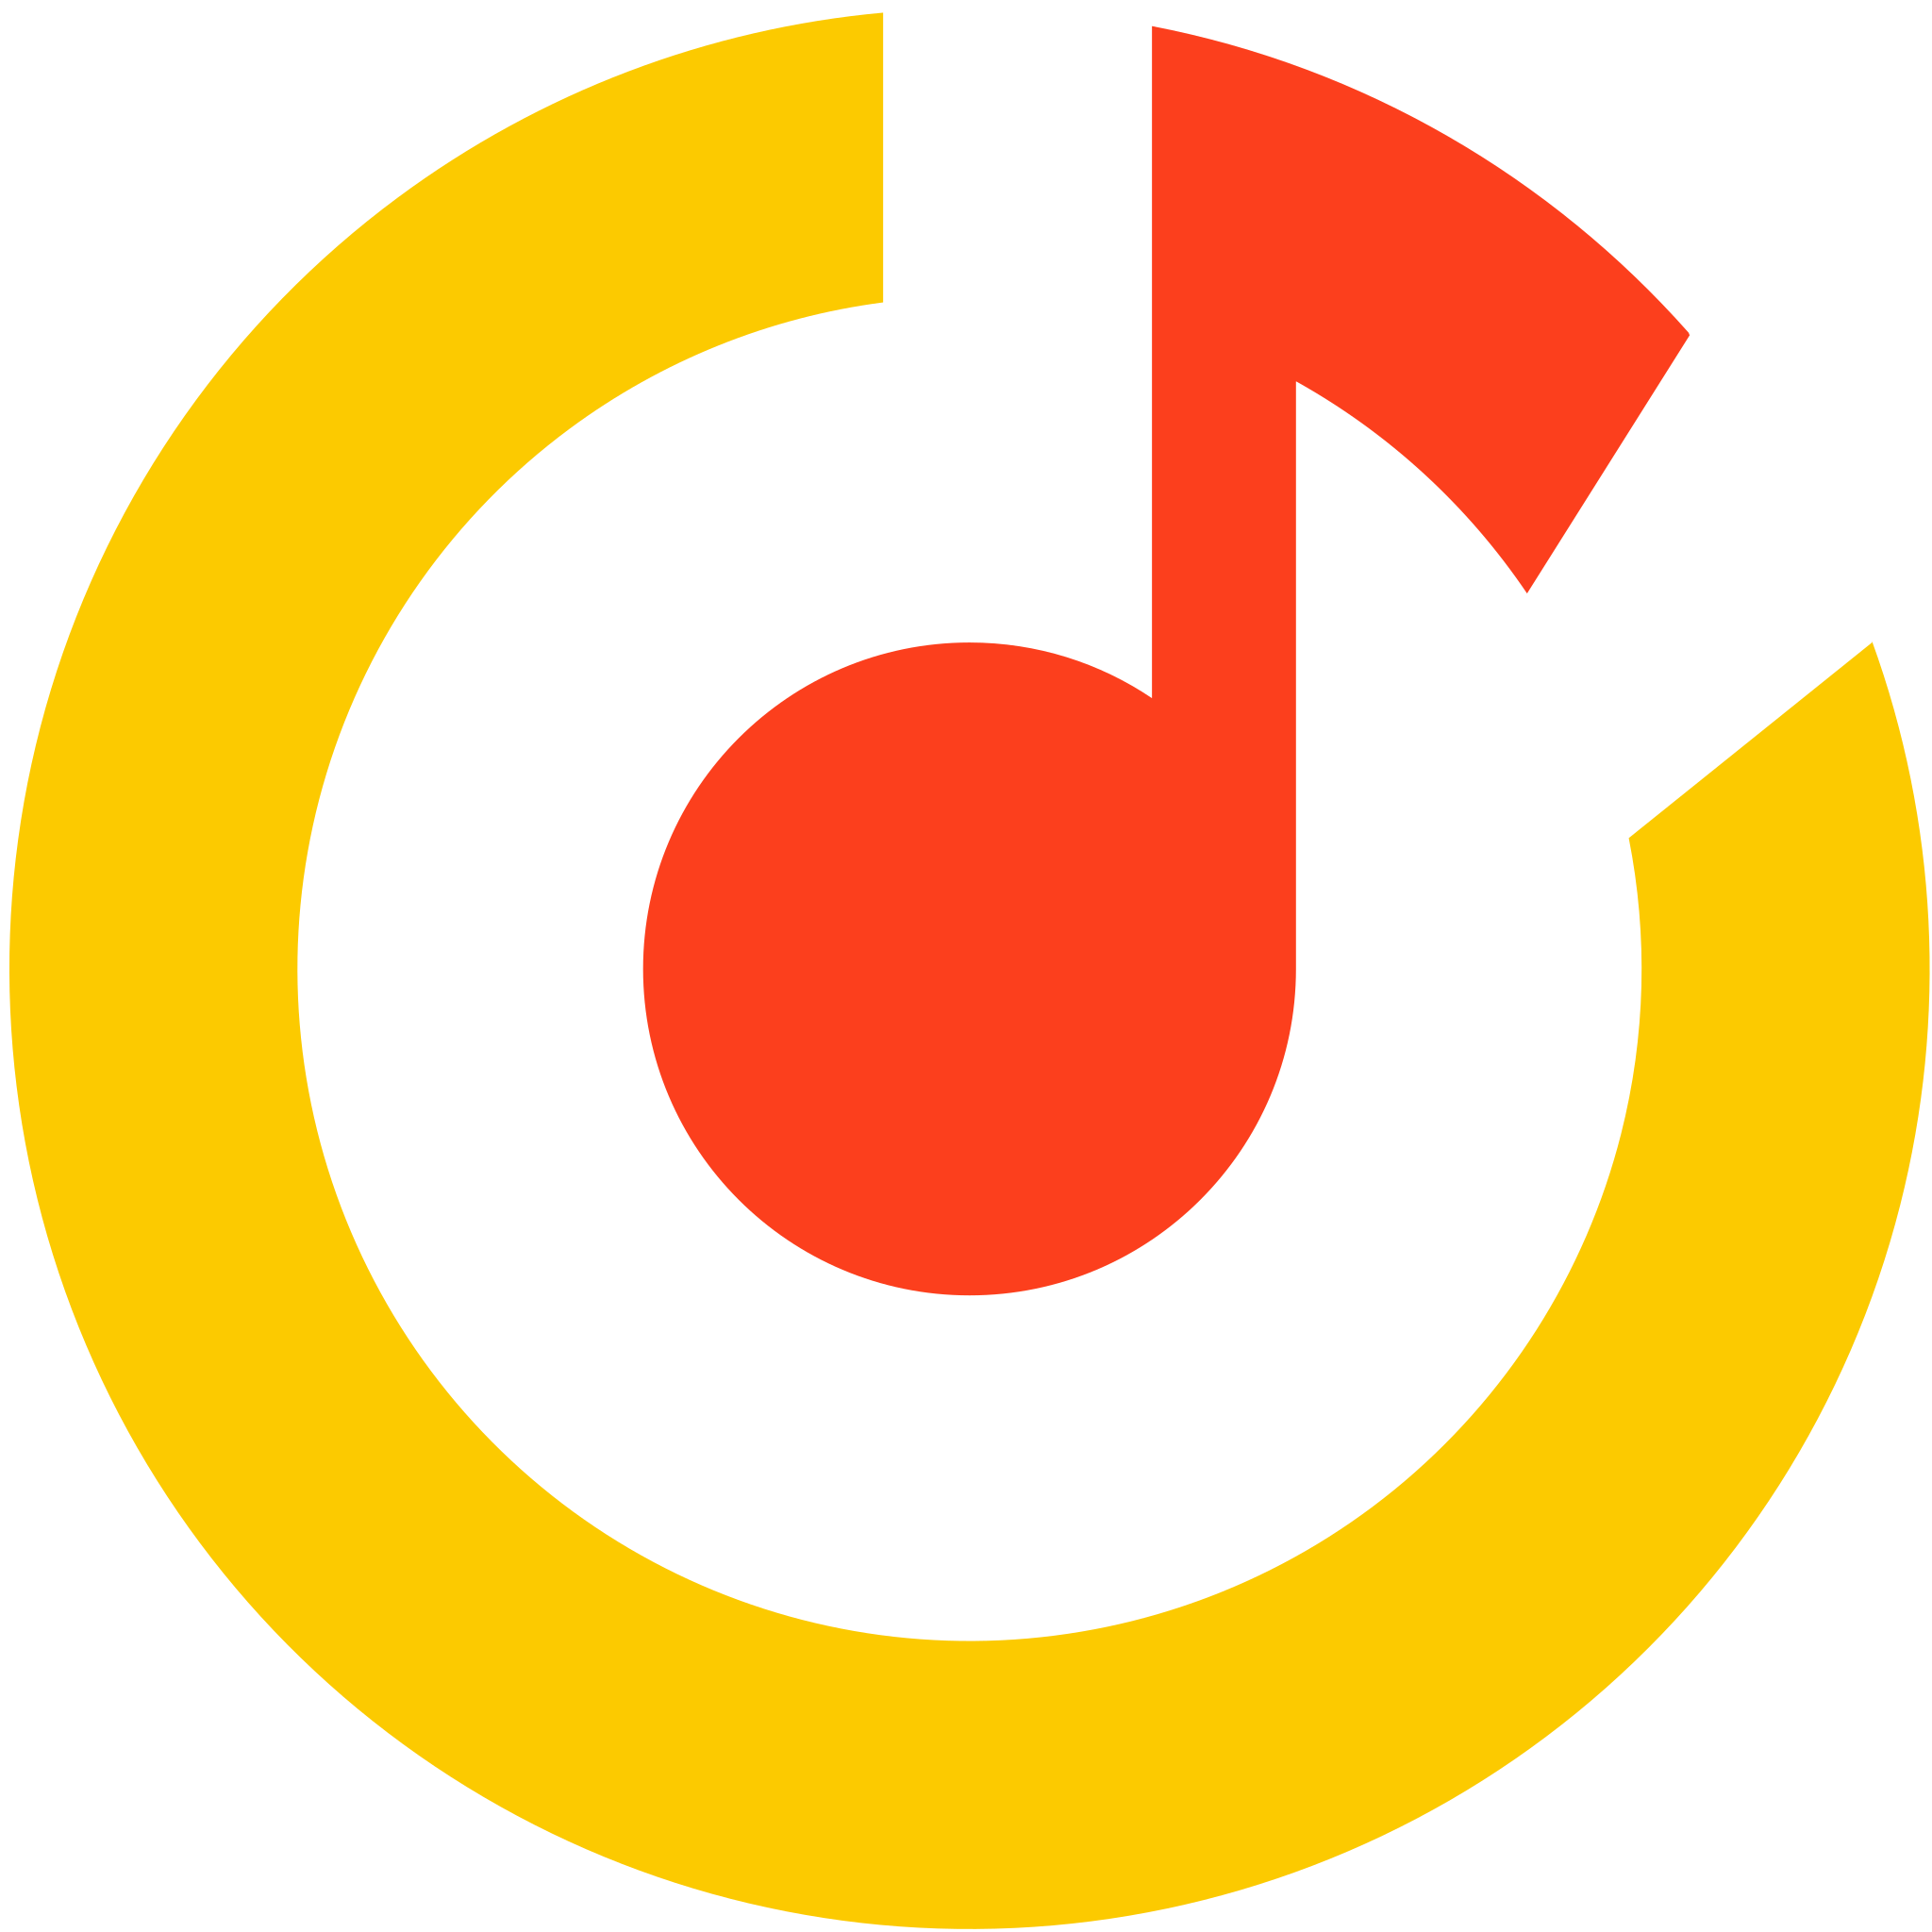 Https music net. Музыкальный логотип.